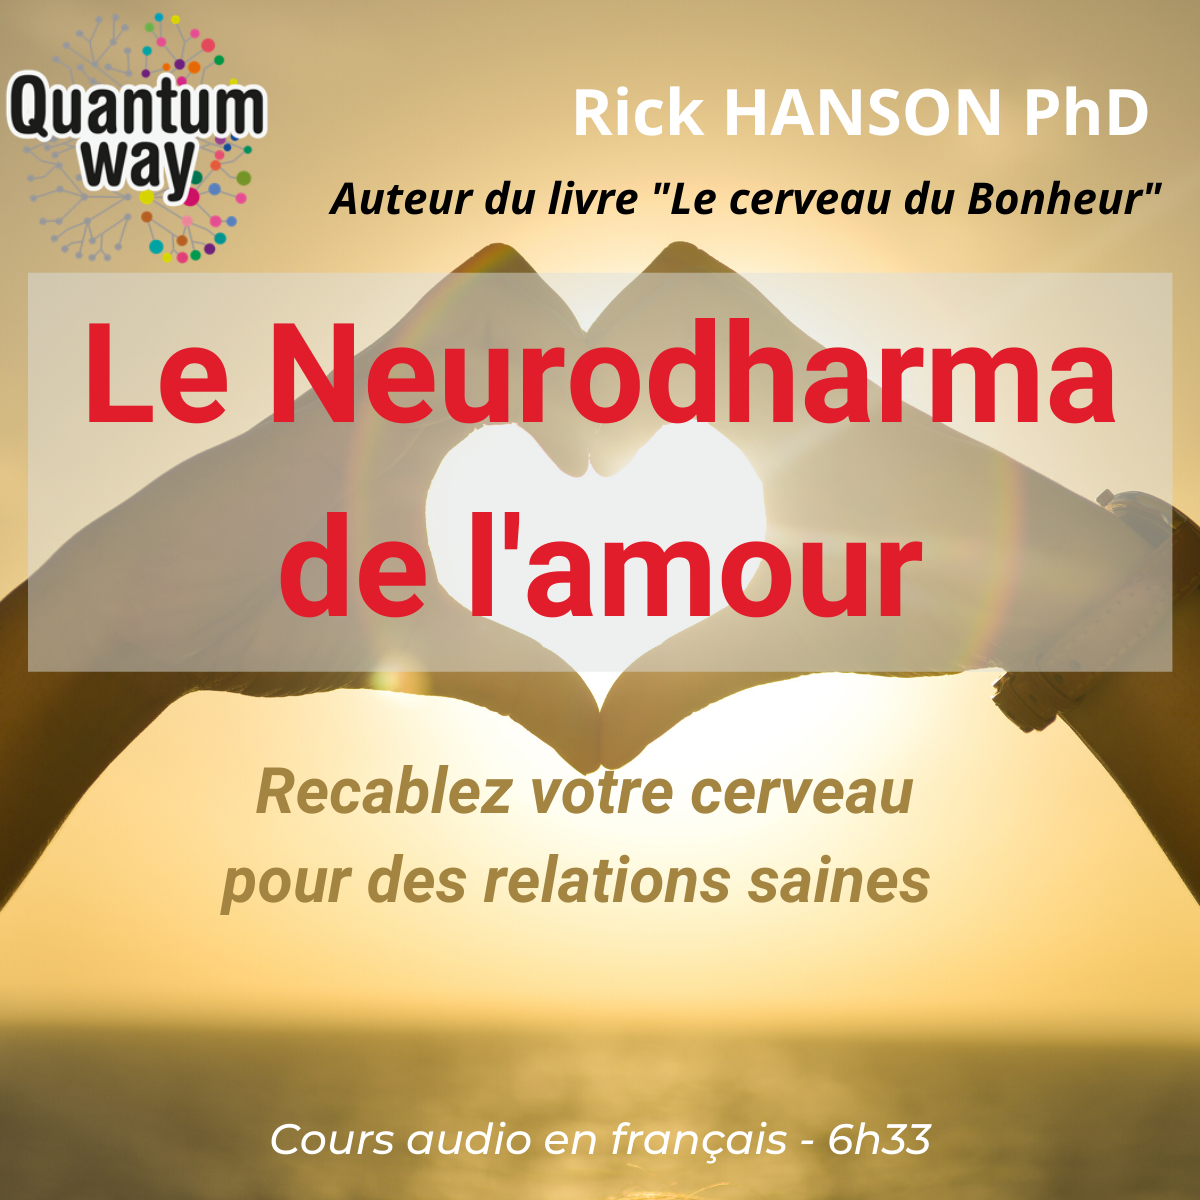 Cours audio_Rick Hanson_Le neurodharma de l amour_Image_1200x1200